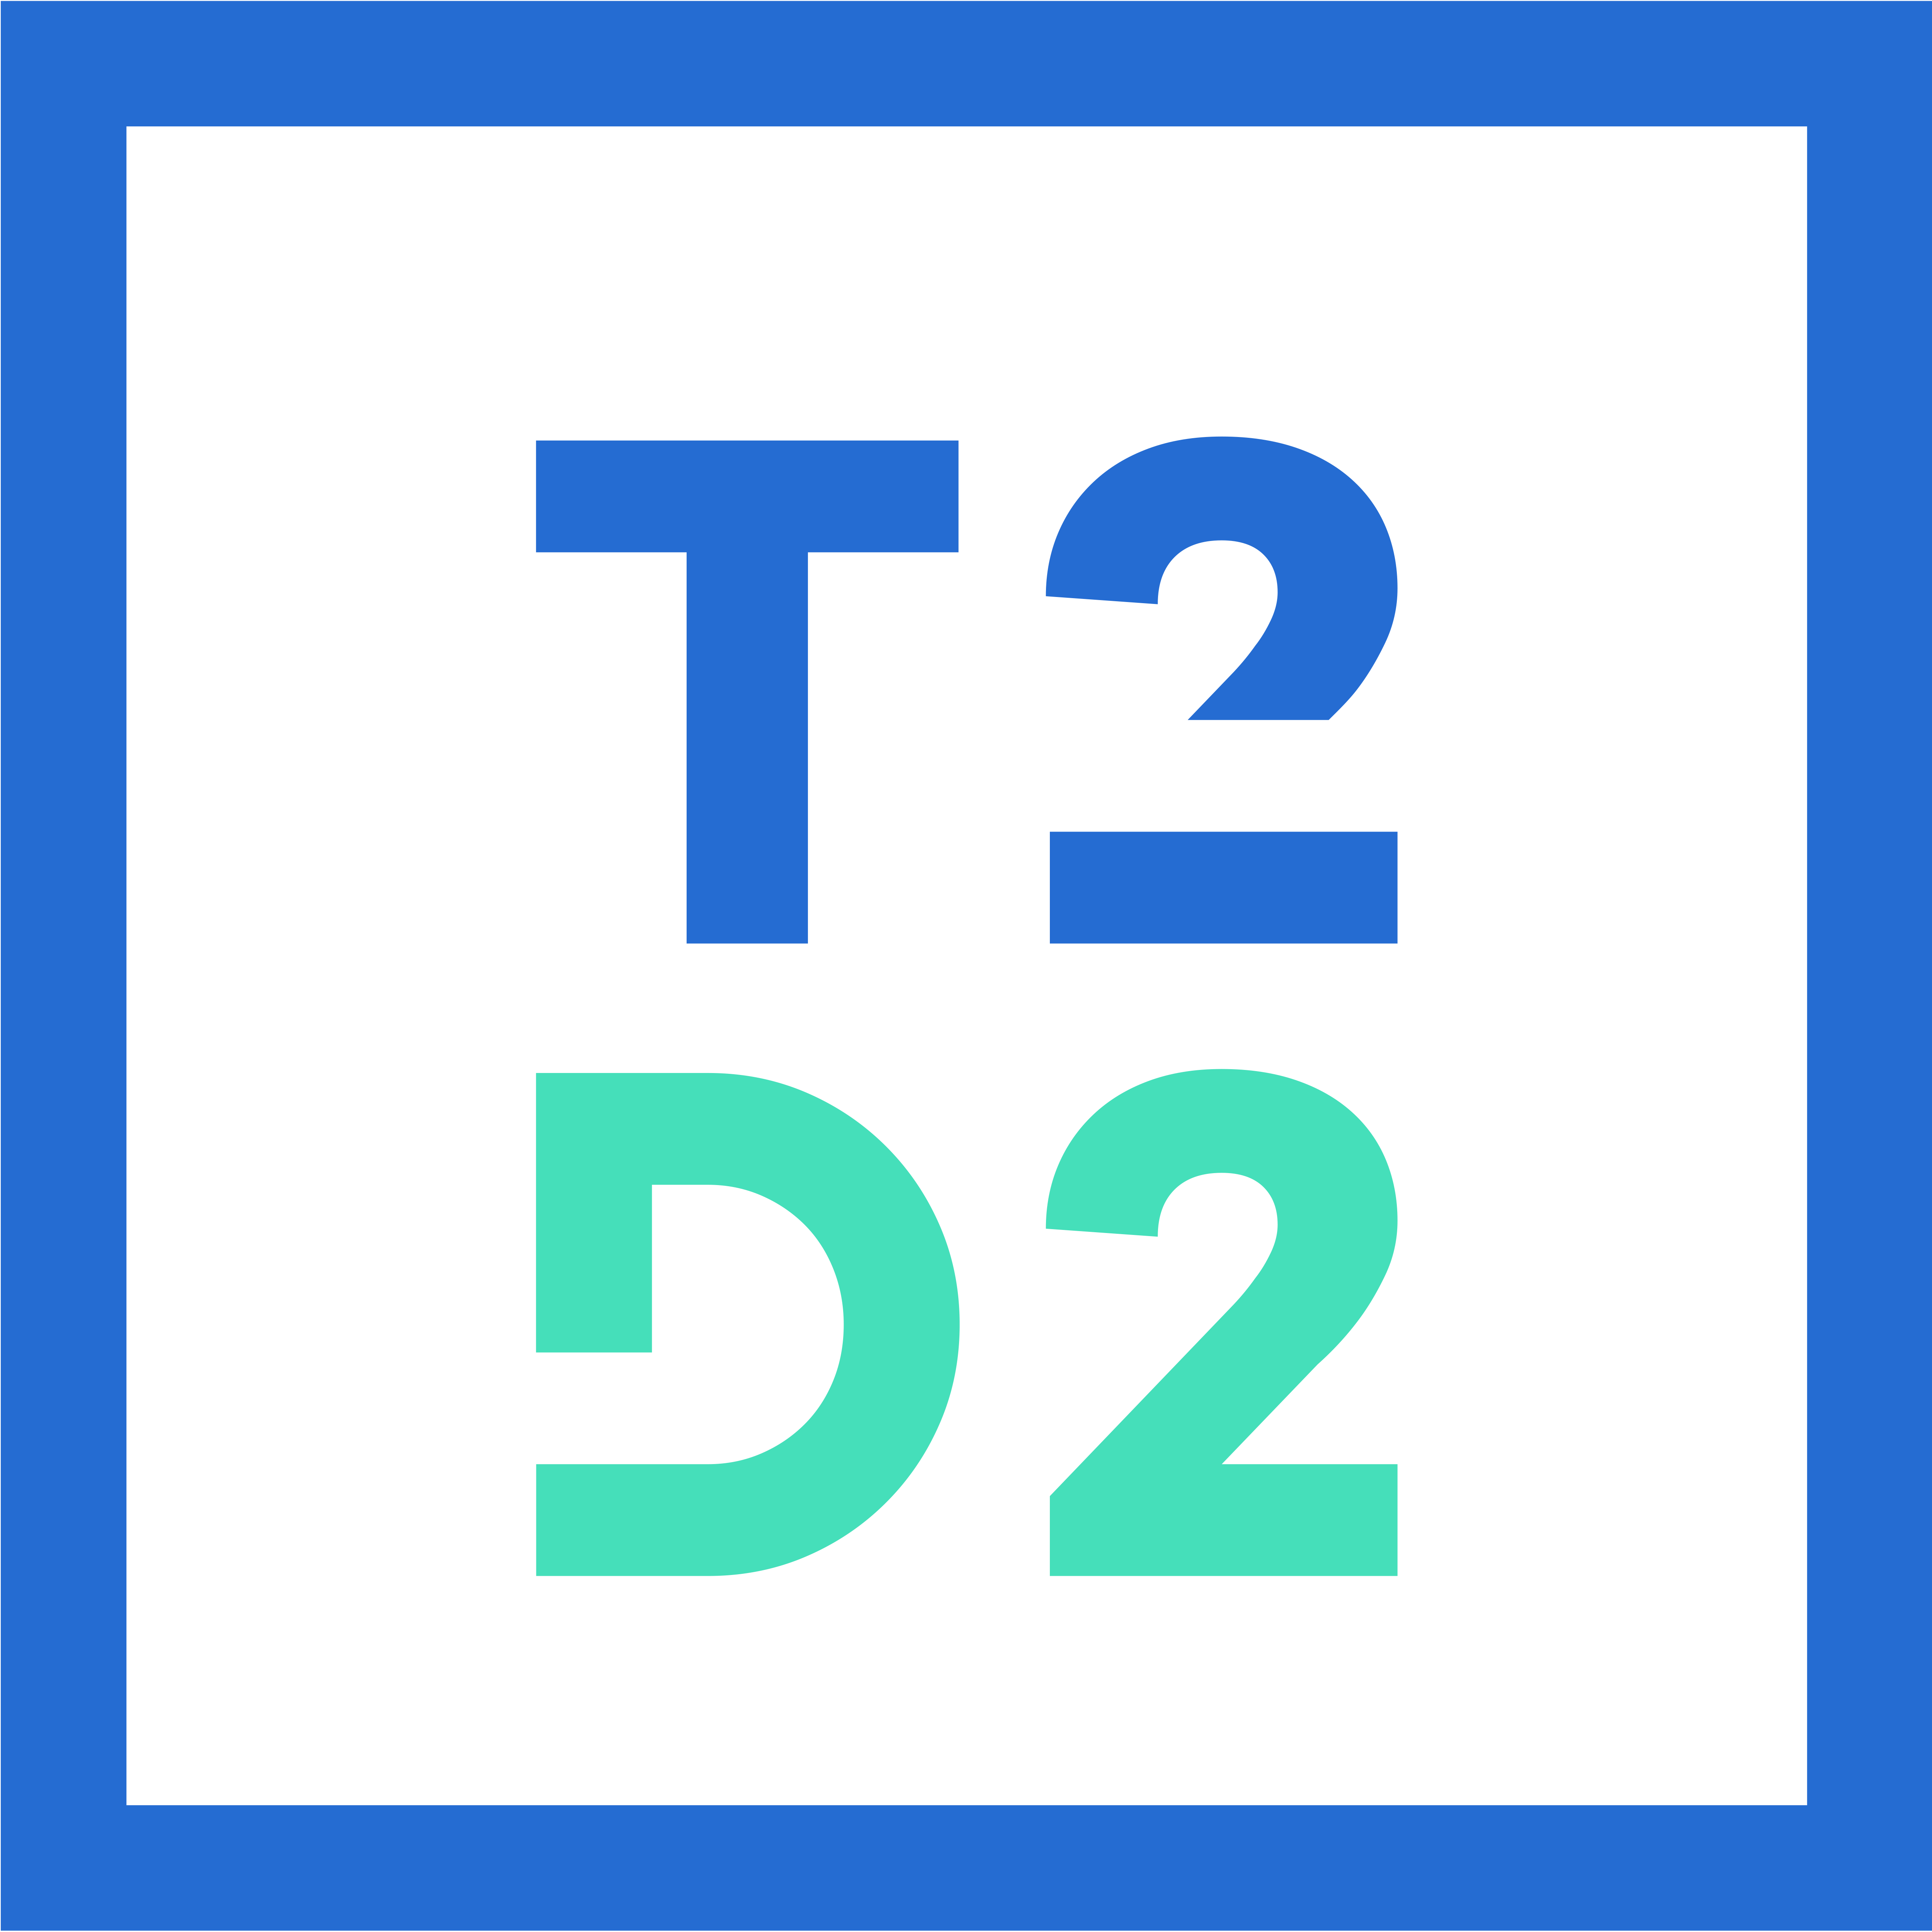 T2D2